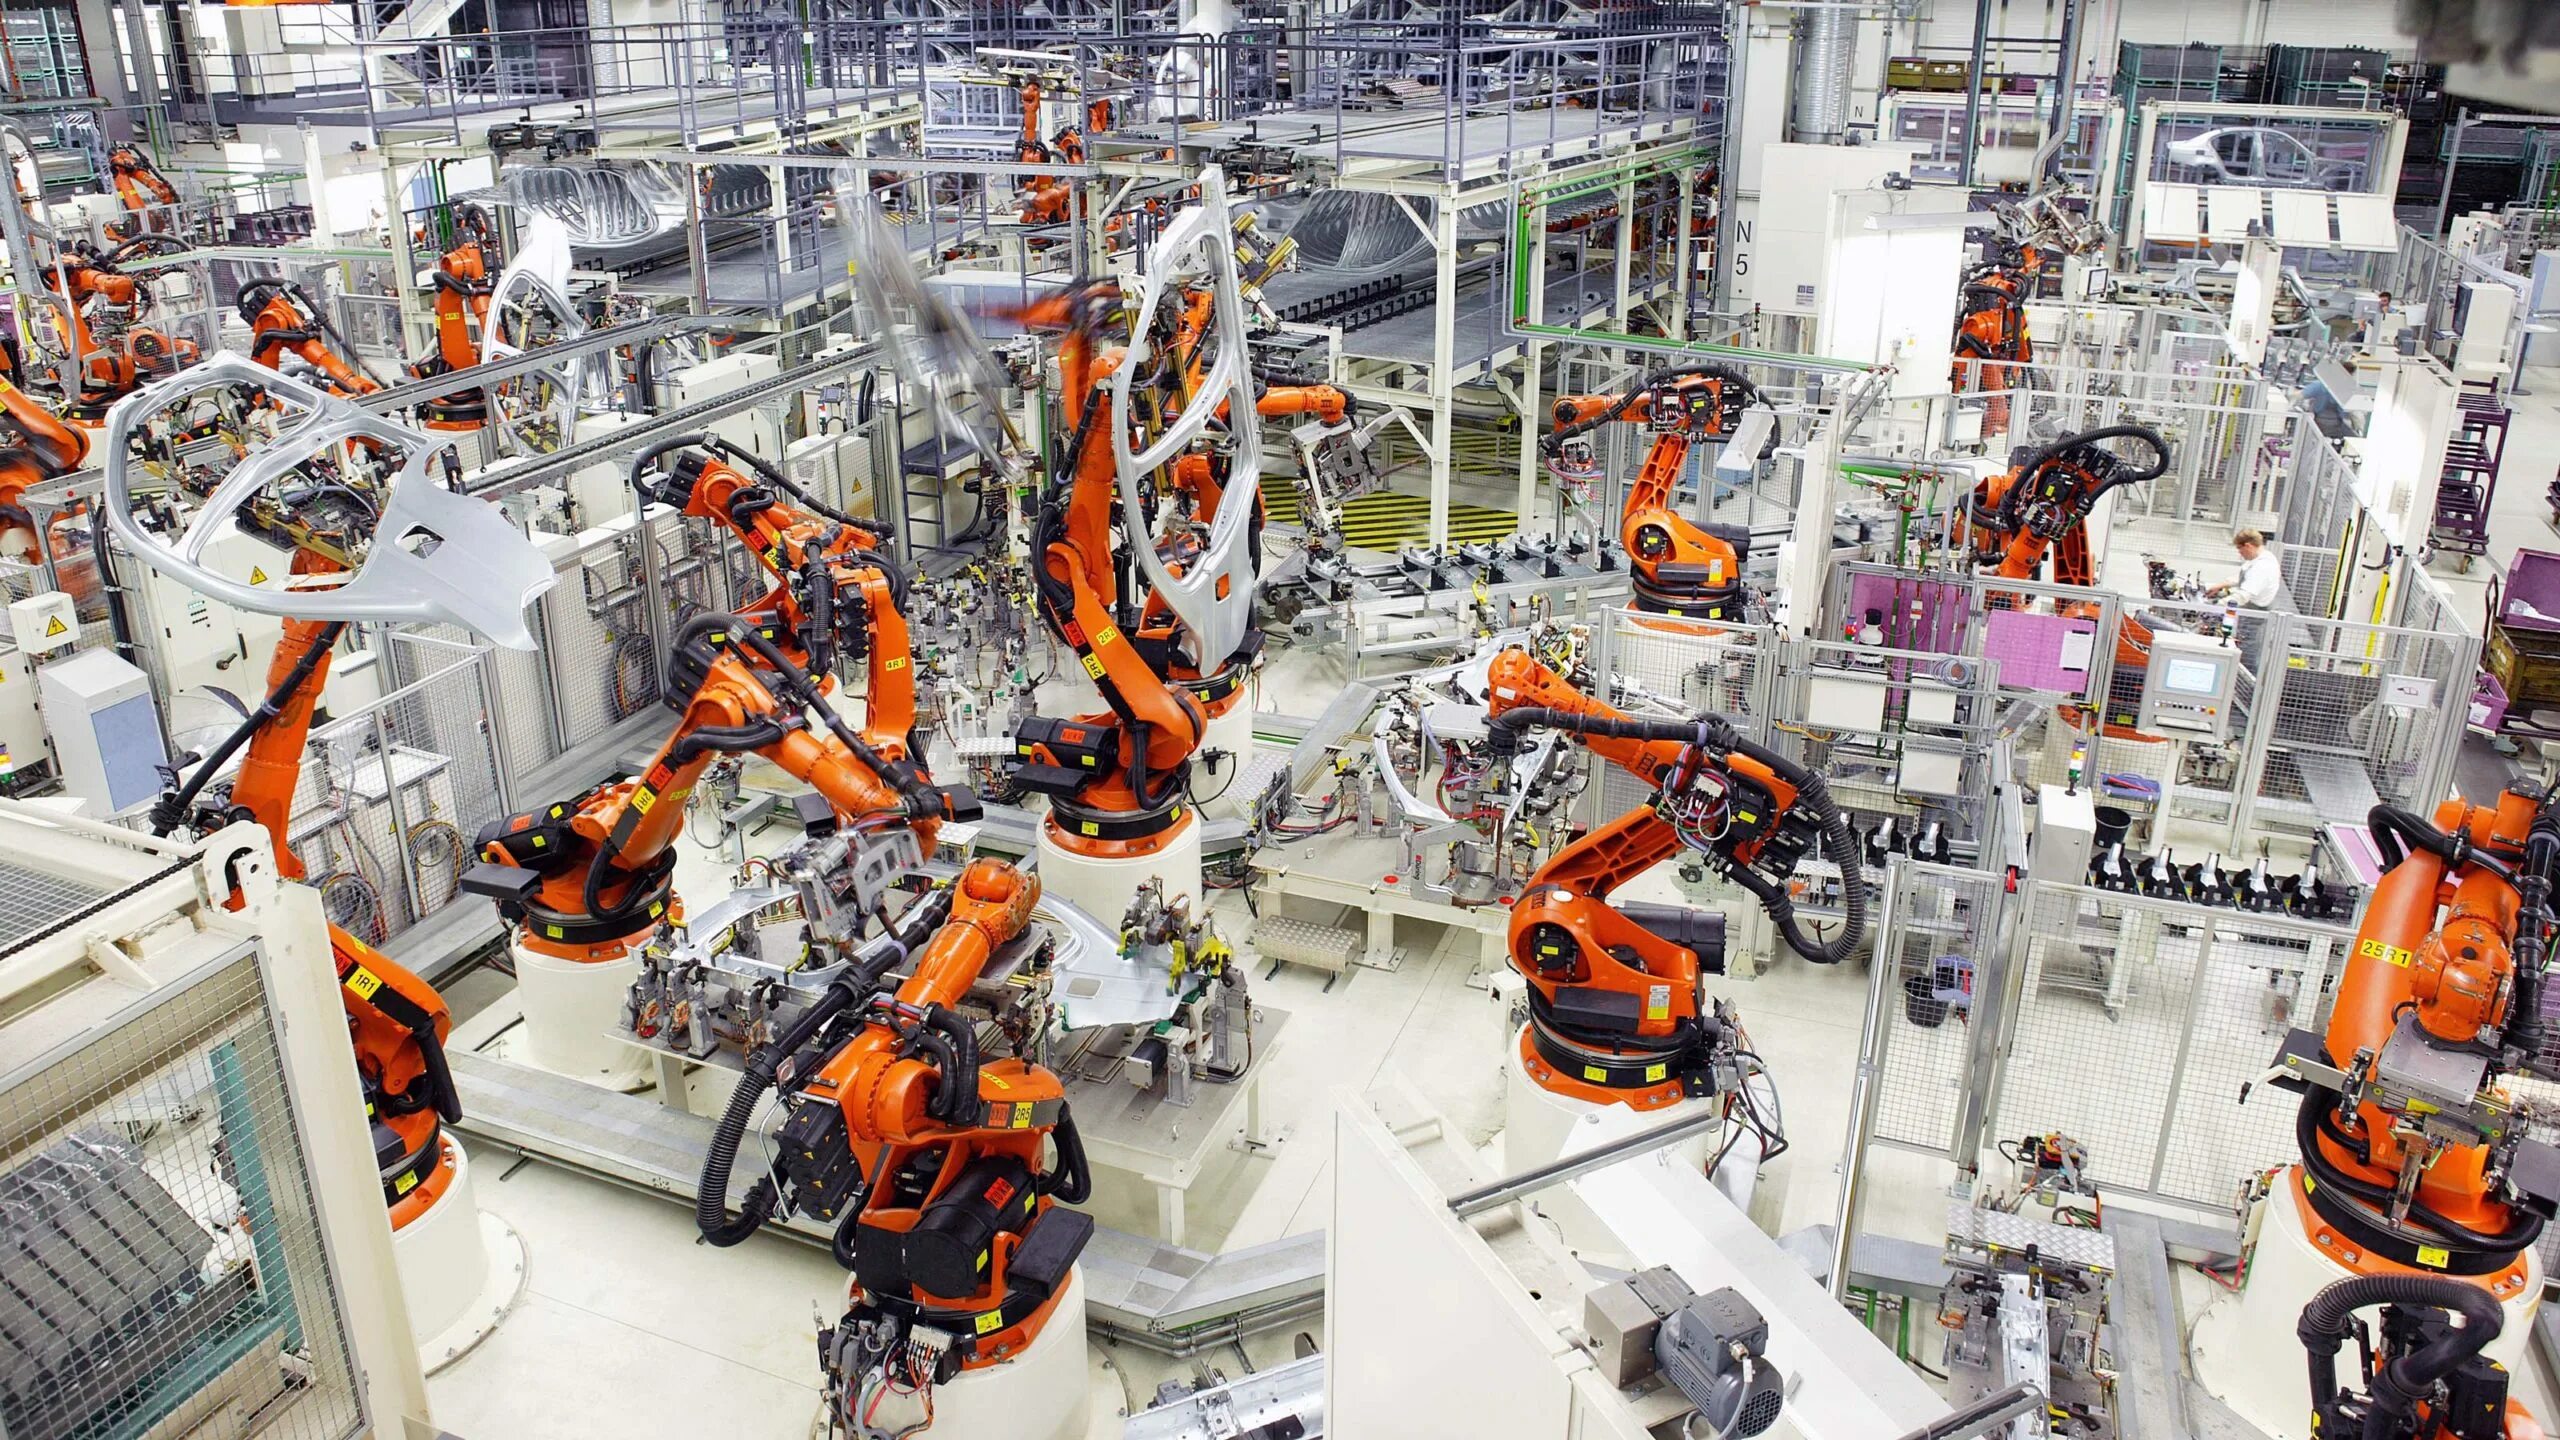 Завод фабрика kuka в Германии. Kuka промышленные роботы Тесла. Машиностроение промышленность. Современное Машиностроение. Производство машиностроительной продукции